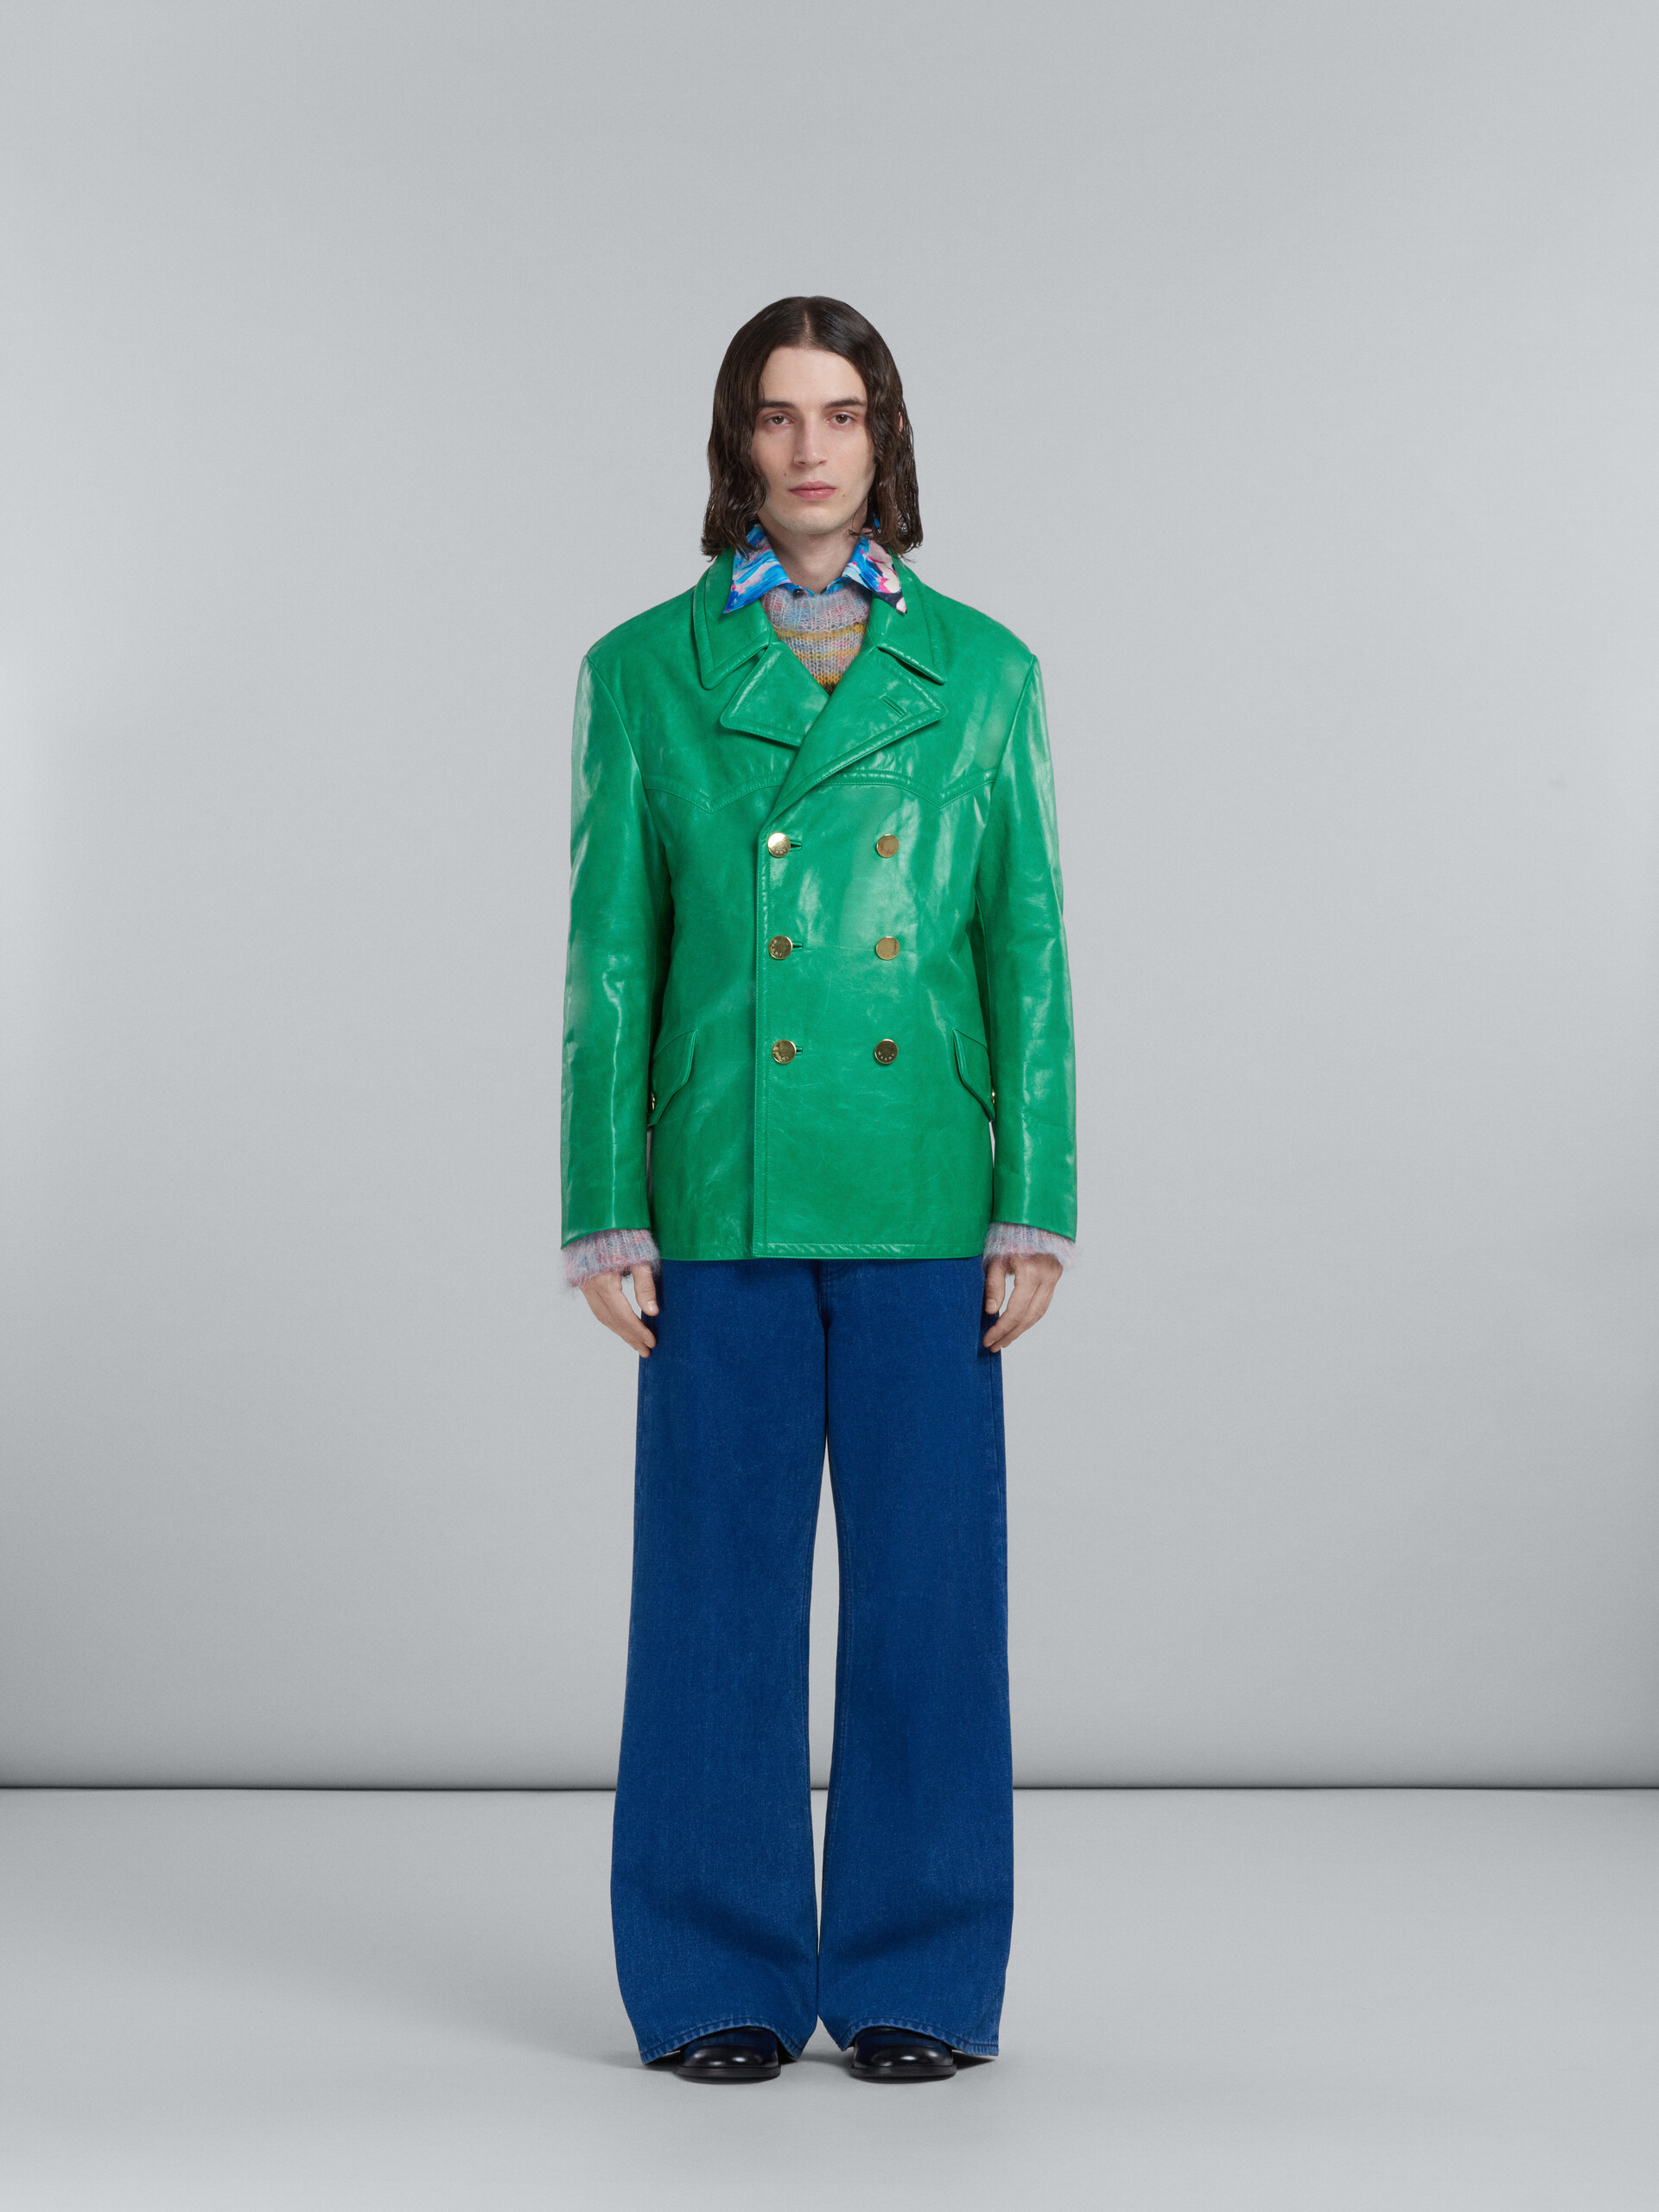 Doppelreihige Jacke aus glänzendem grünem Leder - Mäntel - Image 2